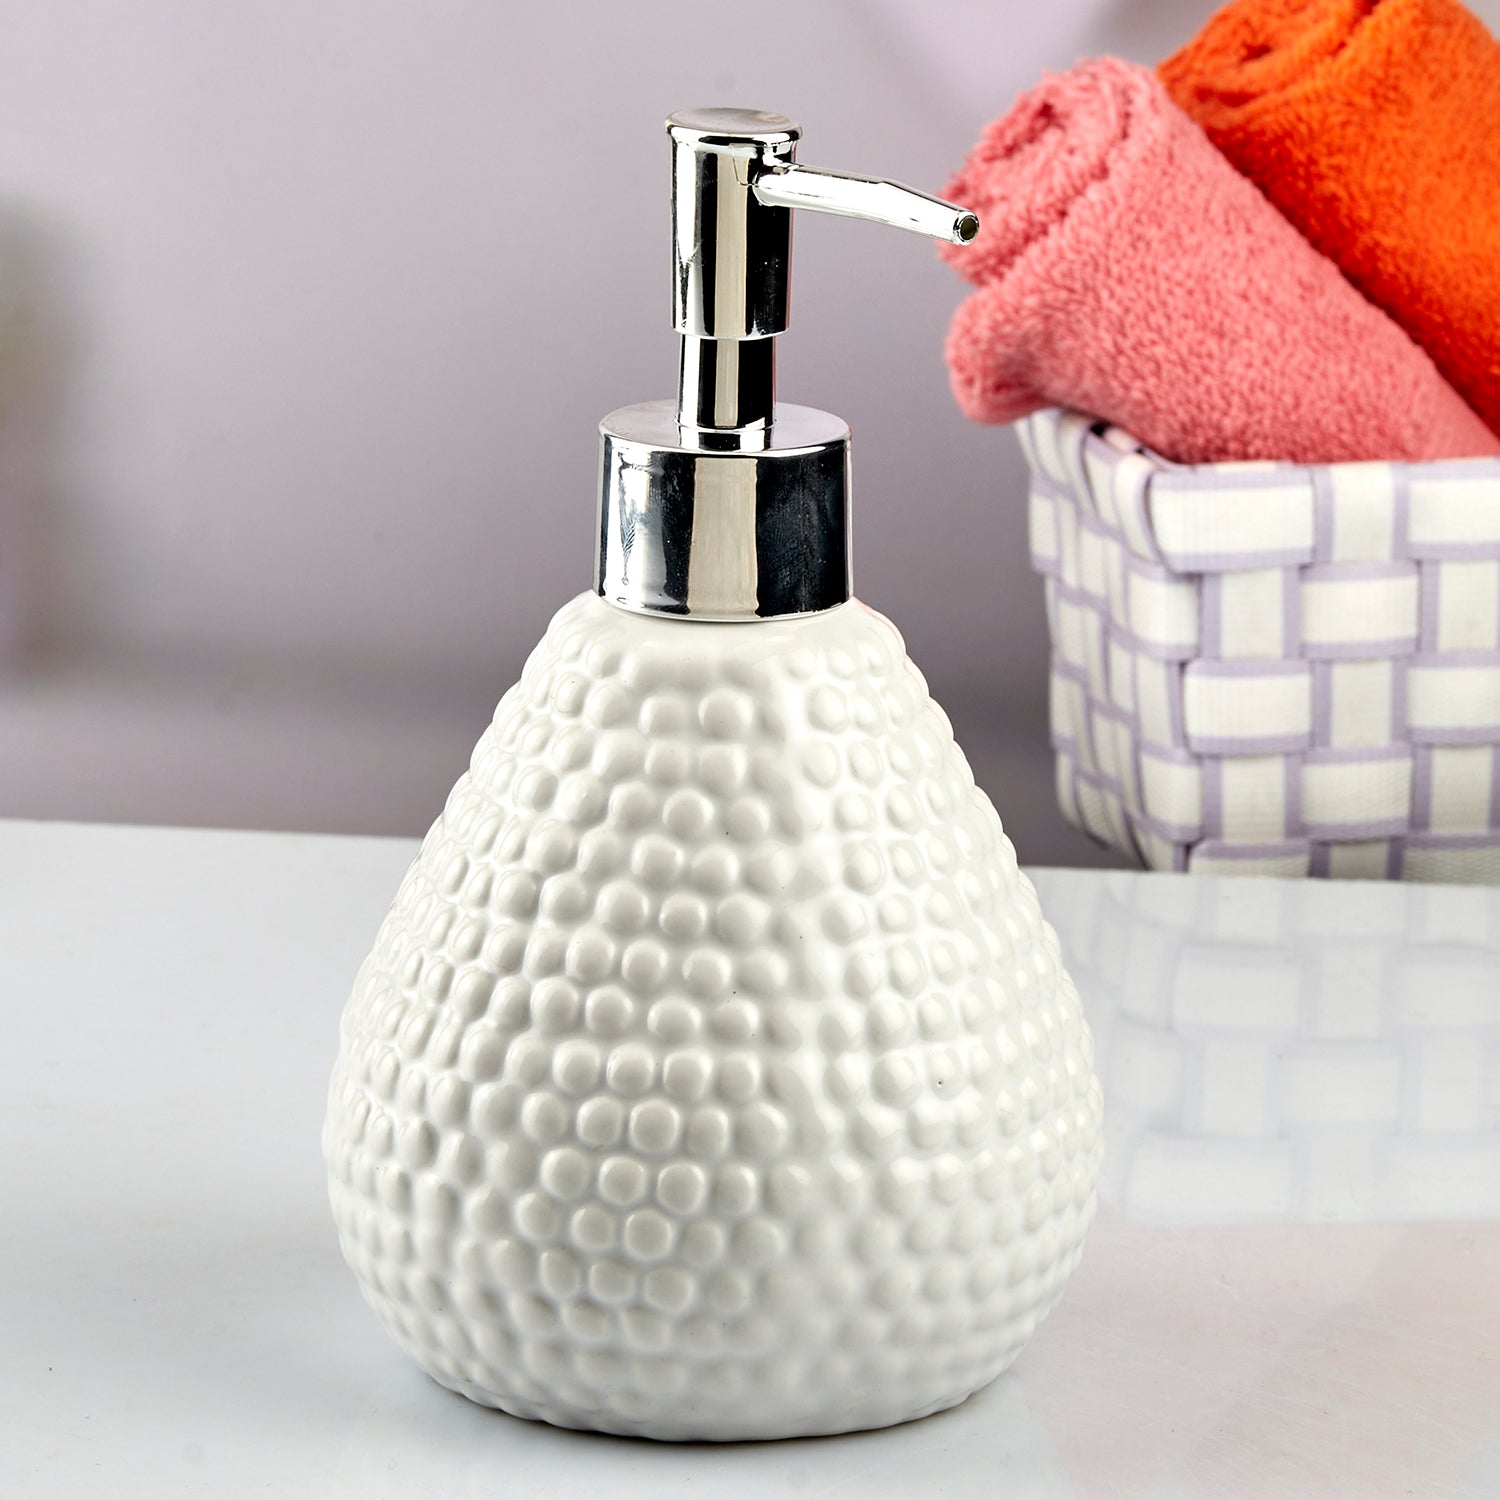 Ceramic Soap Dispenser liquid handwash pump for Bathroom, Set of 1, White (10607)